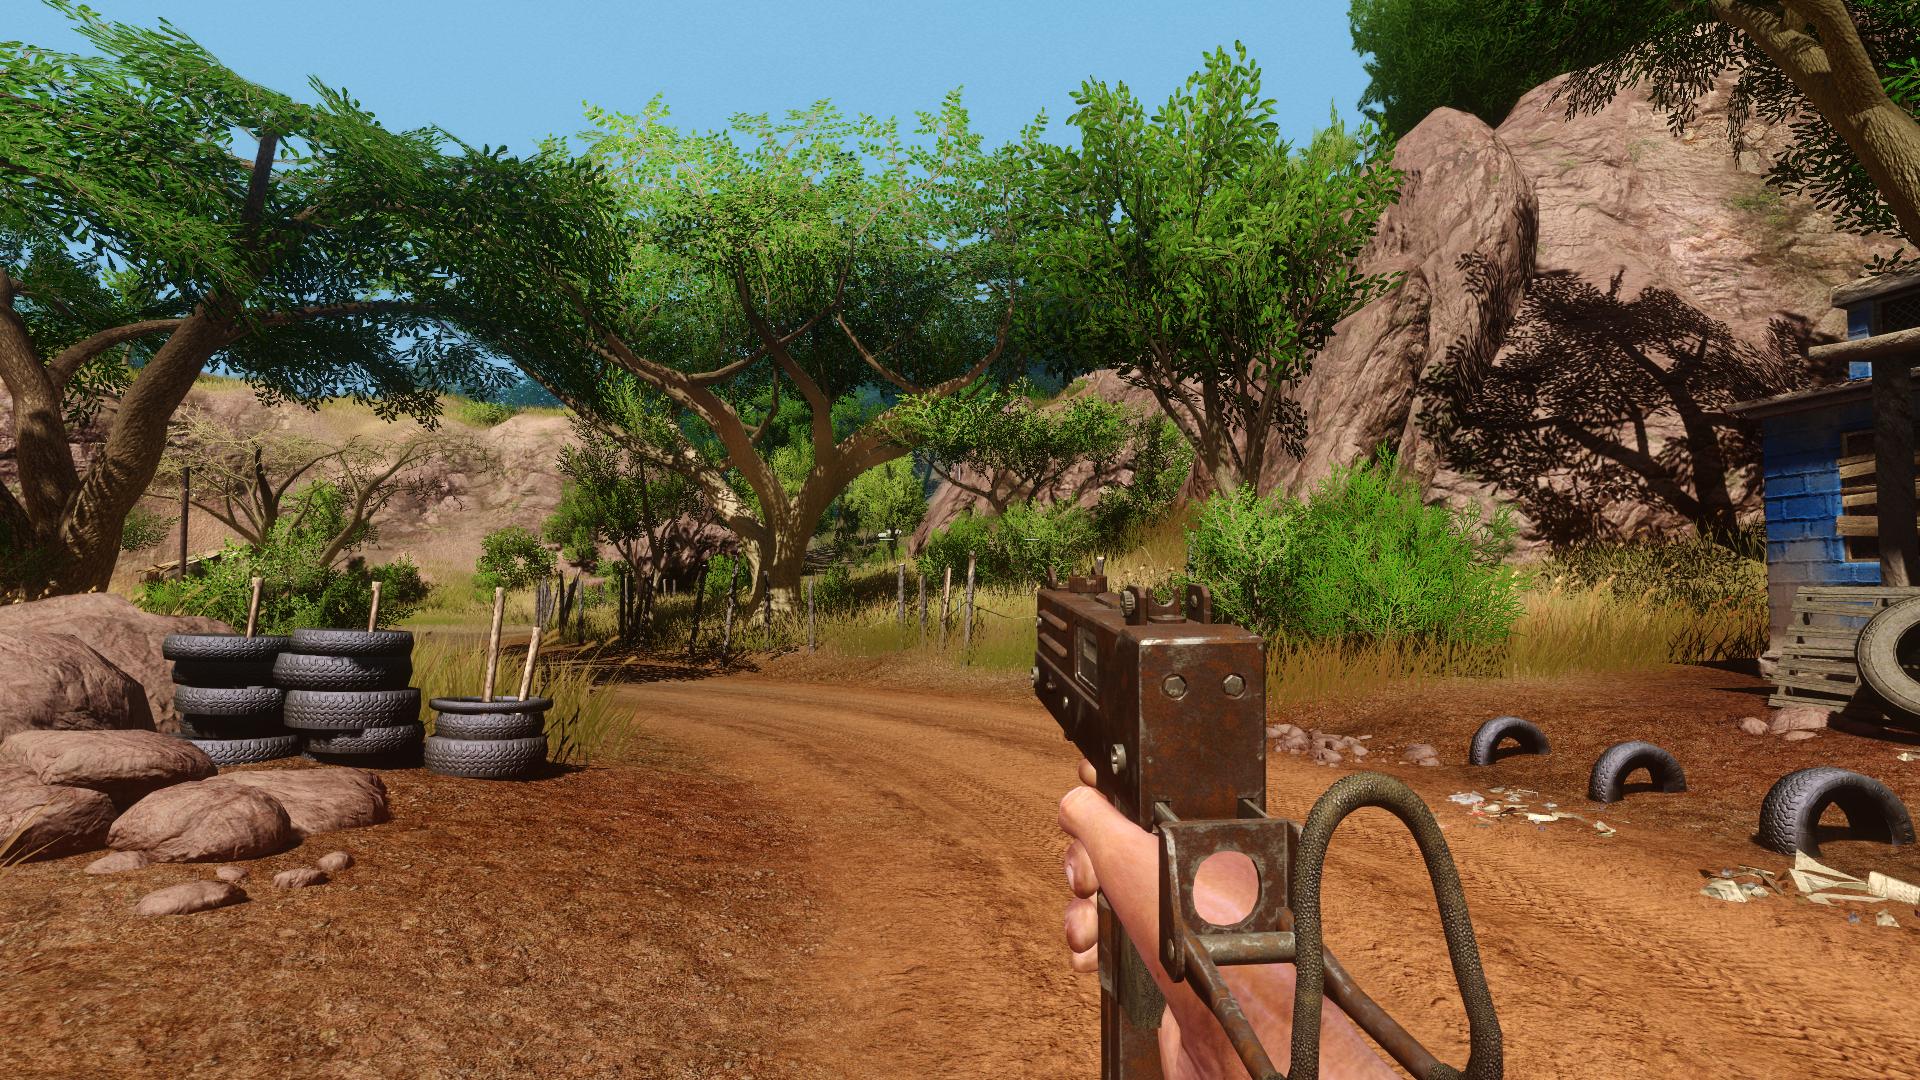 Far Cry 2 custom maps based on CS addon - Far Cry 2 - ModDB